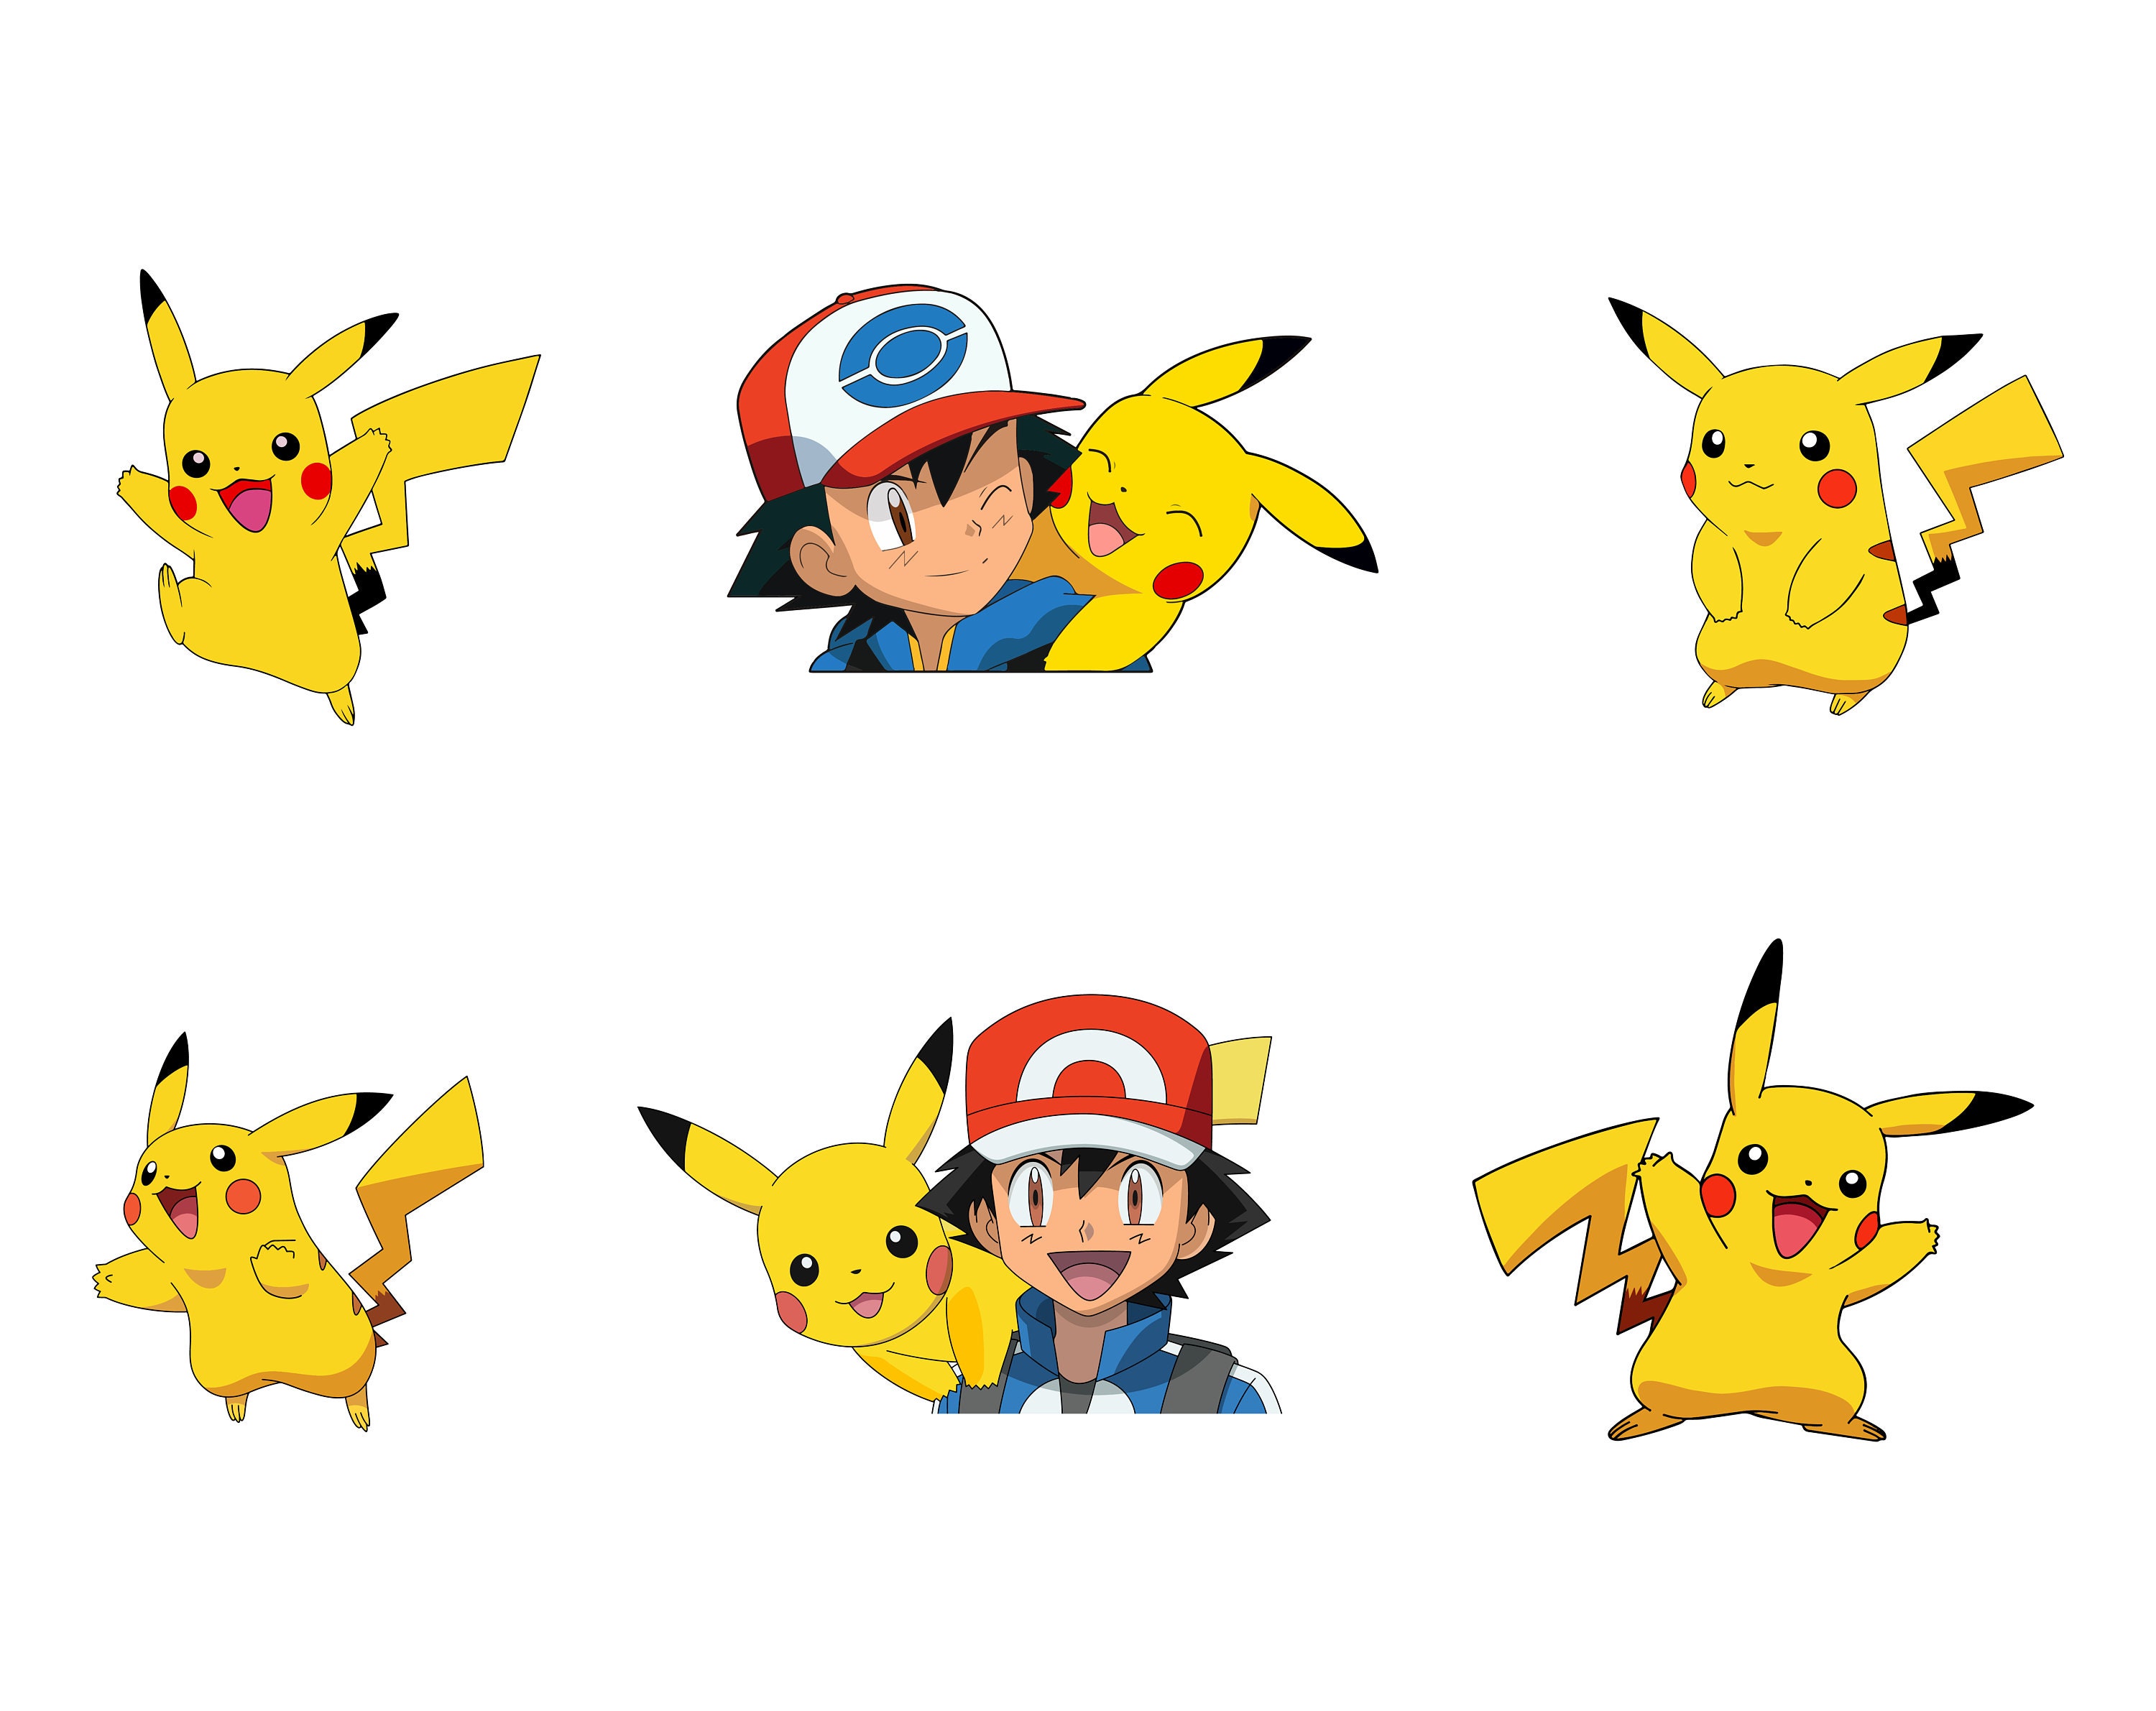 Vetorização: Ash e Pikachu